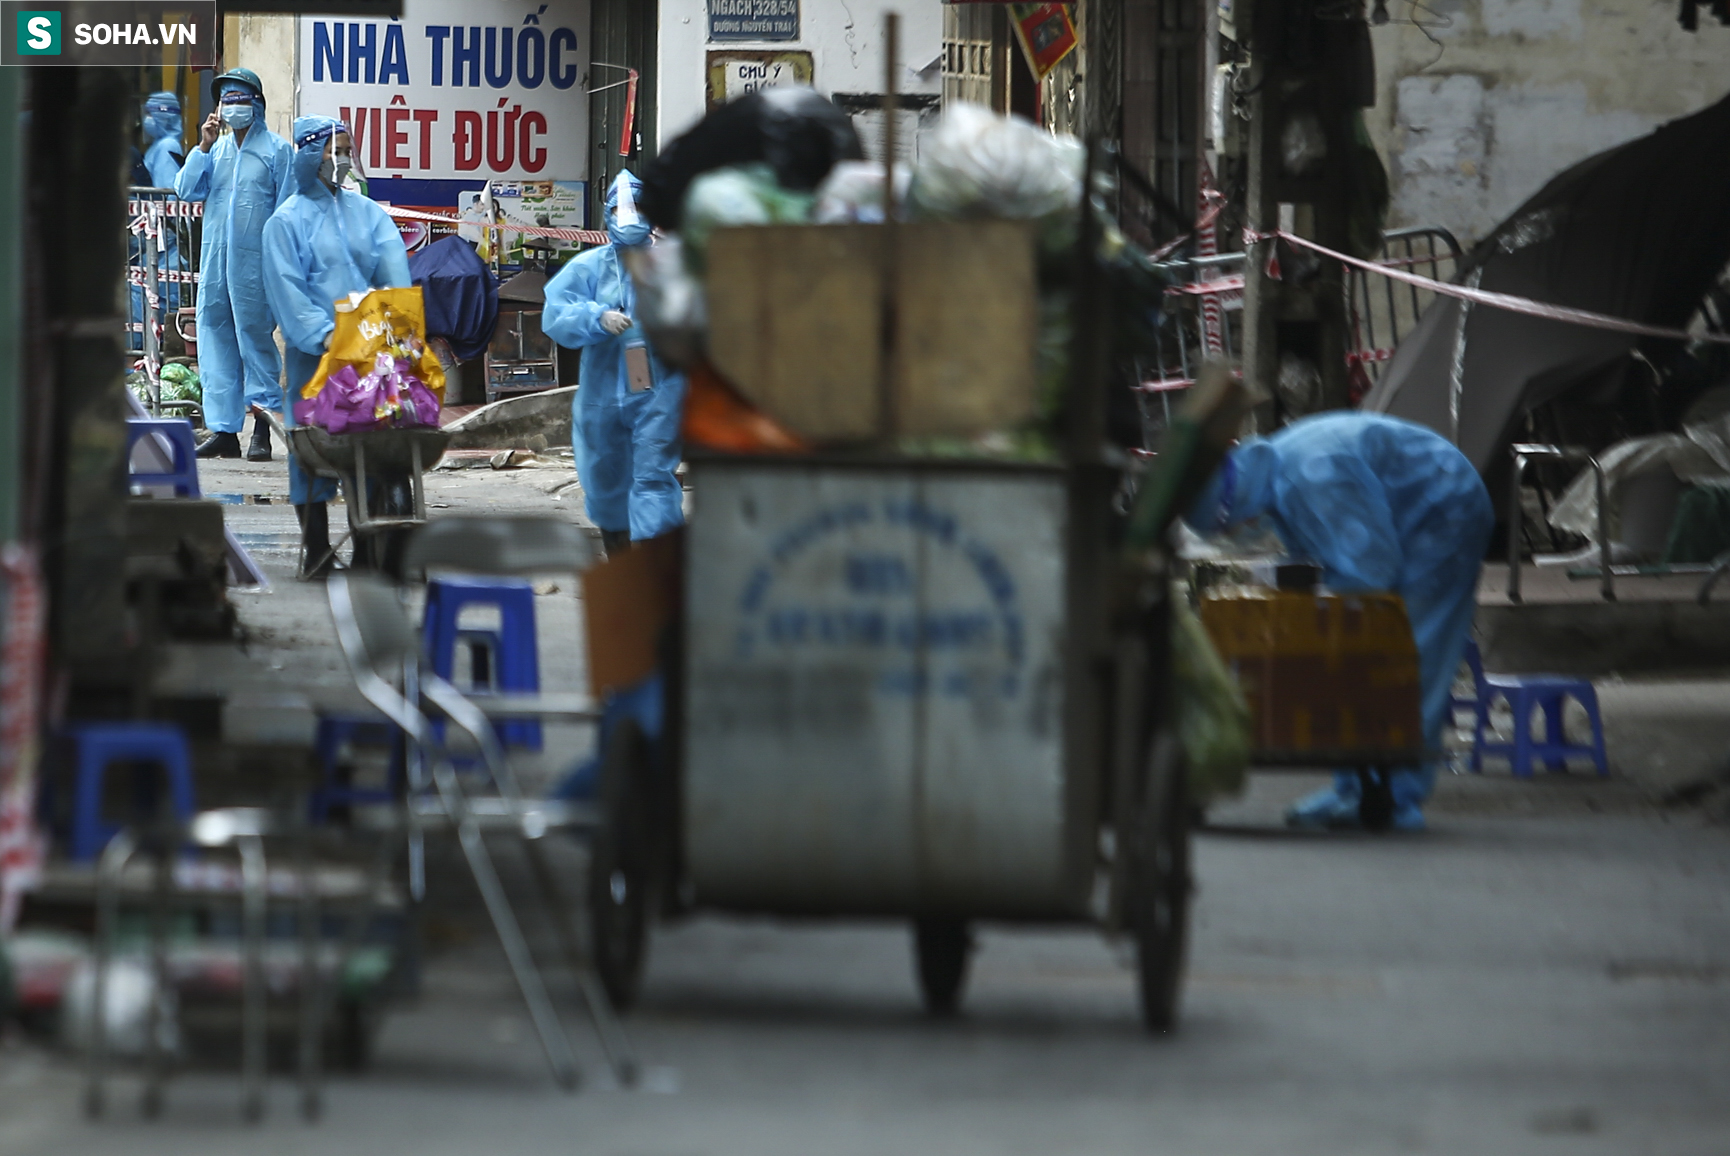 Hà Nội: Đảm bảo an toàn nghiêm ngặt công tác cấp phát lương thực, thực phẩm tại ổ dịch Thanh Xuân - Ảnh 7.